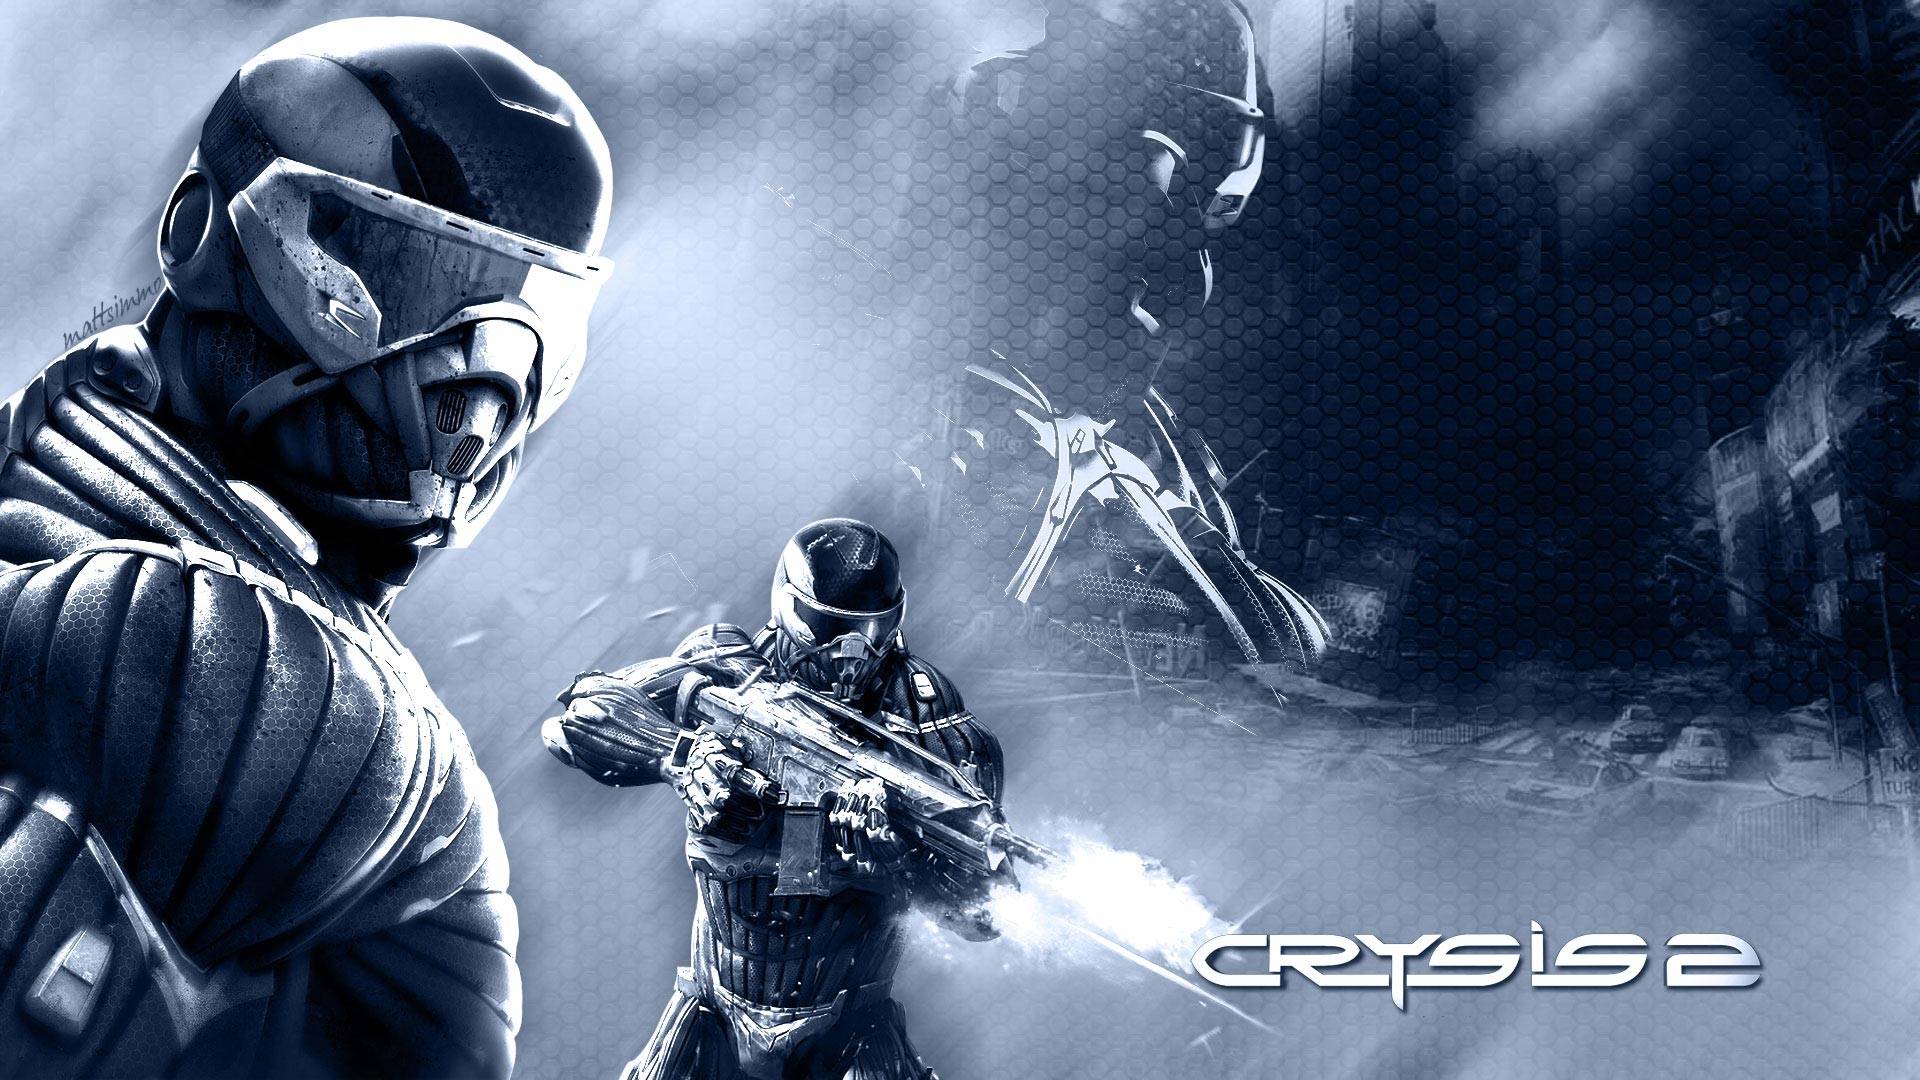 Crysis 2 Wallpapers in full 1080P HD GamingBoltcom Video Game